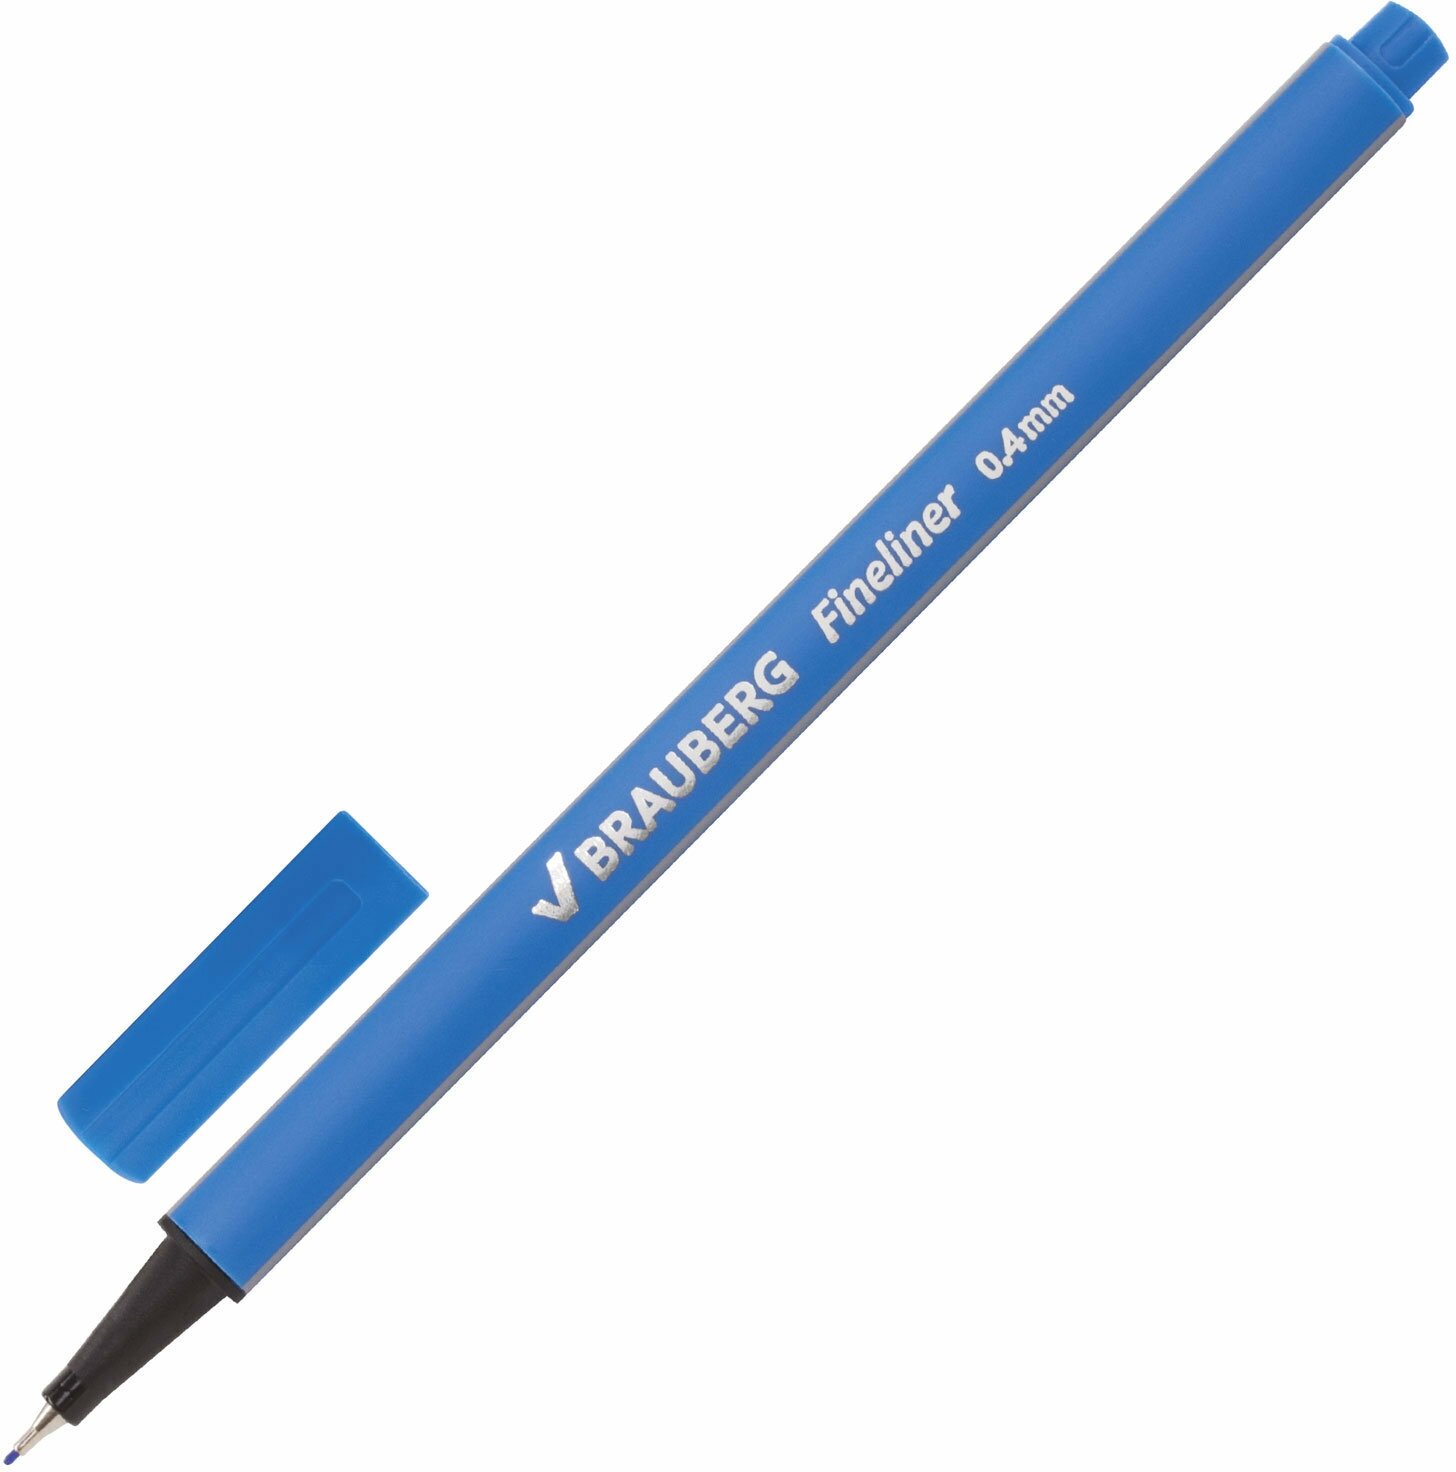 Ручка капиллярная (линер) BRAUBERG Aero, голубая, трехгранная, металлич. наконечник, 0,4мм, 142259, - Комплект 5 шт.(компл.)